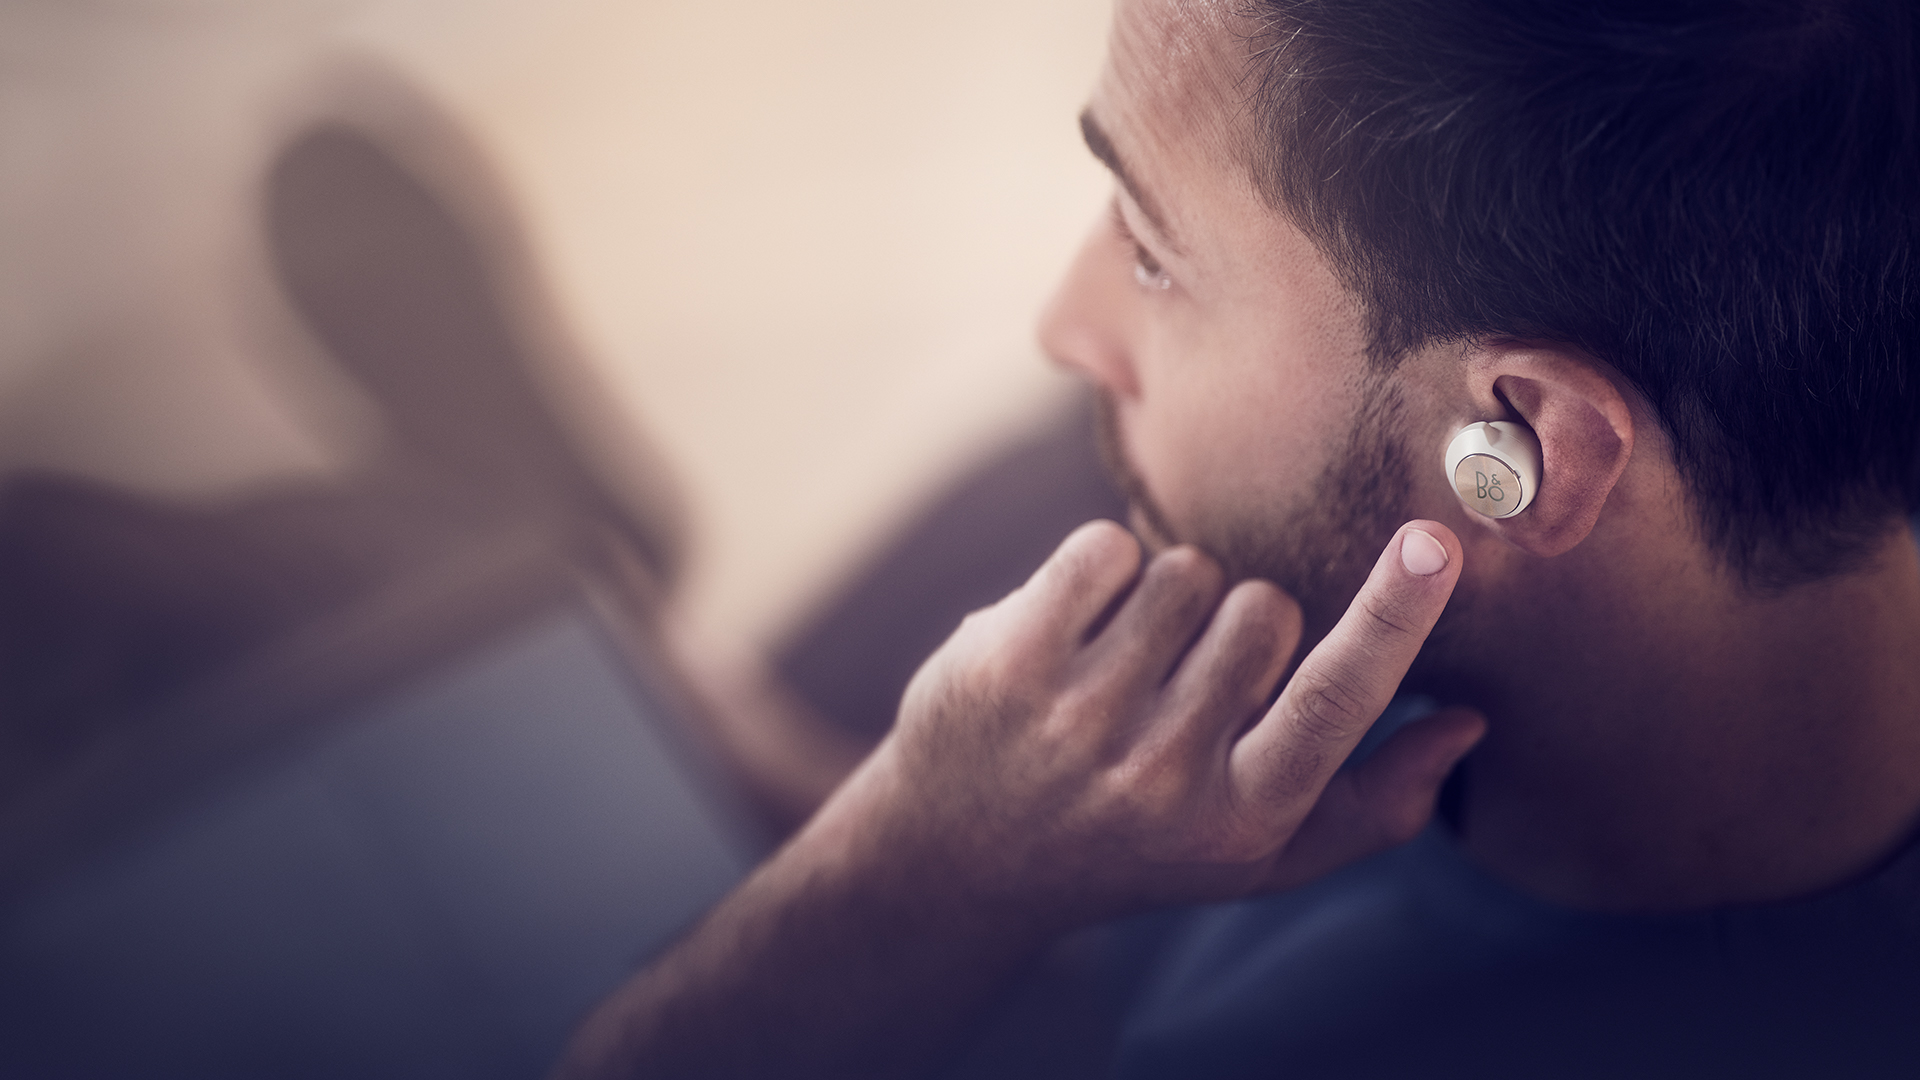 Bang & Olufsen ra mắt Beoplay EQ, tai nghe true wireless chống ồn đầu tiên của mình